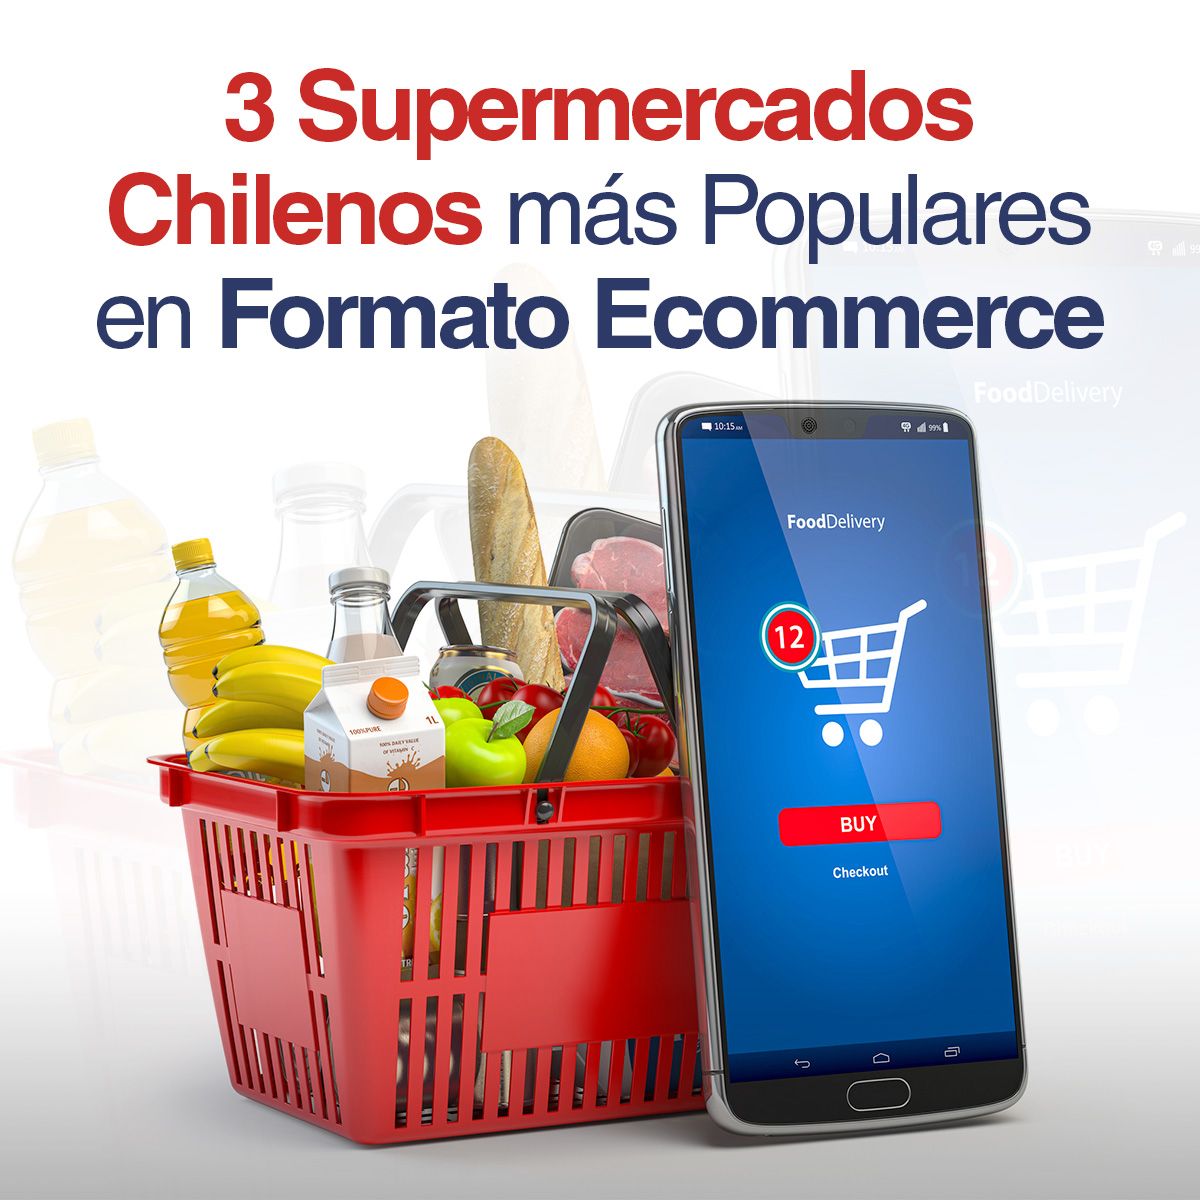 3 Supermercados Chilenos más Populares en Formato Ecommerce